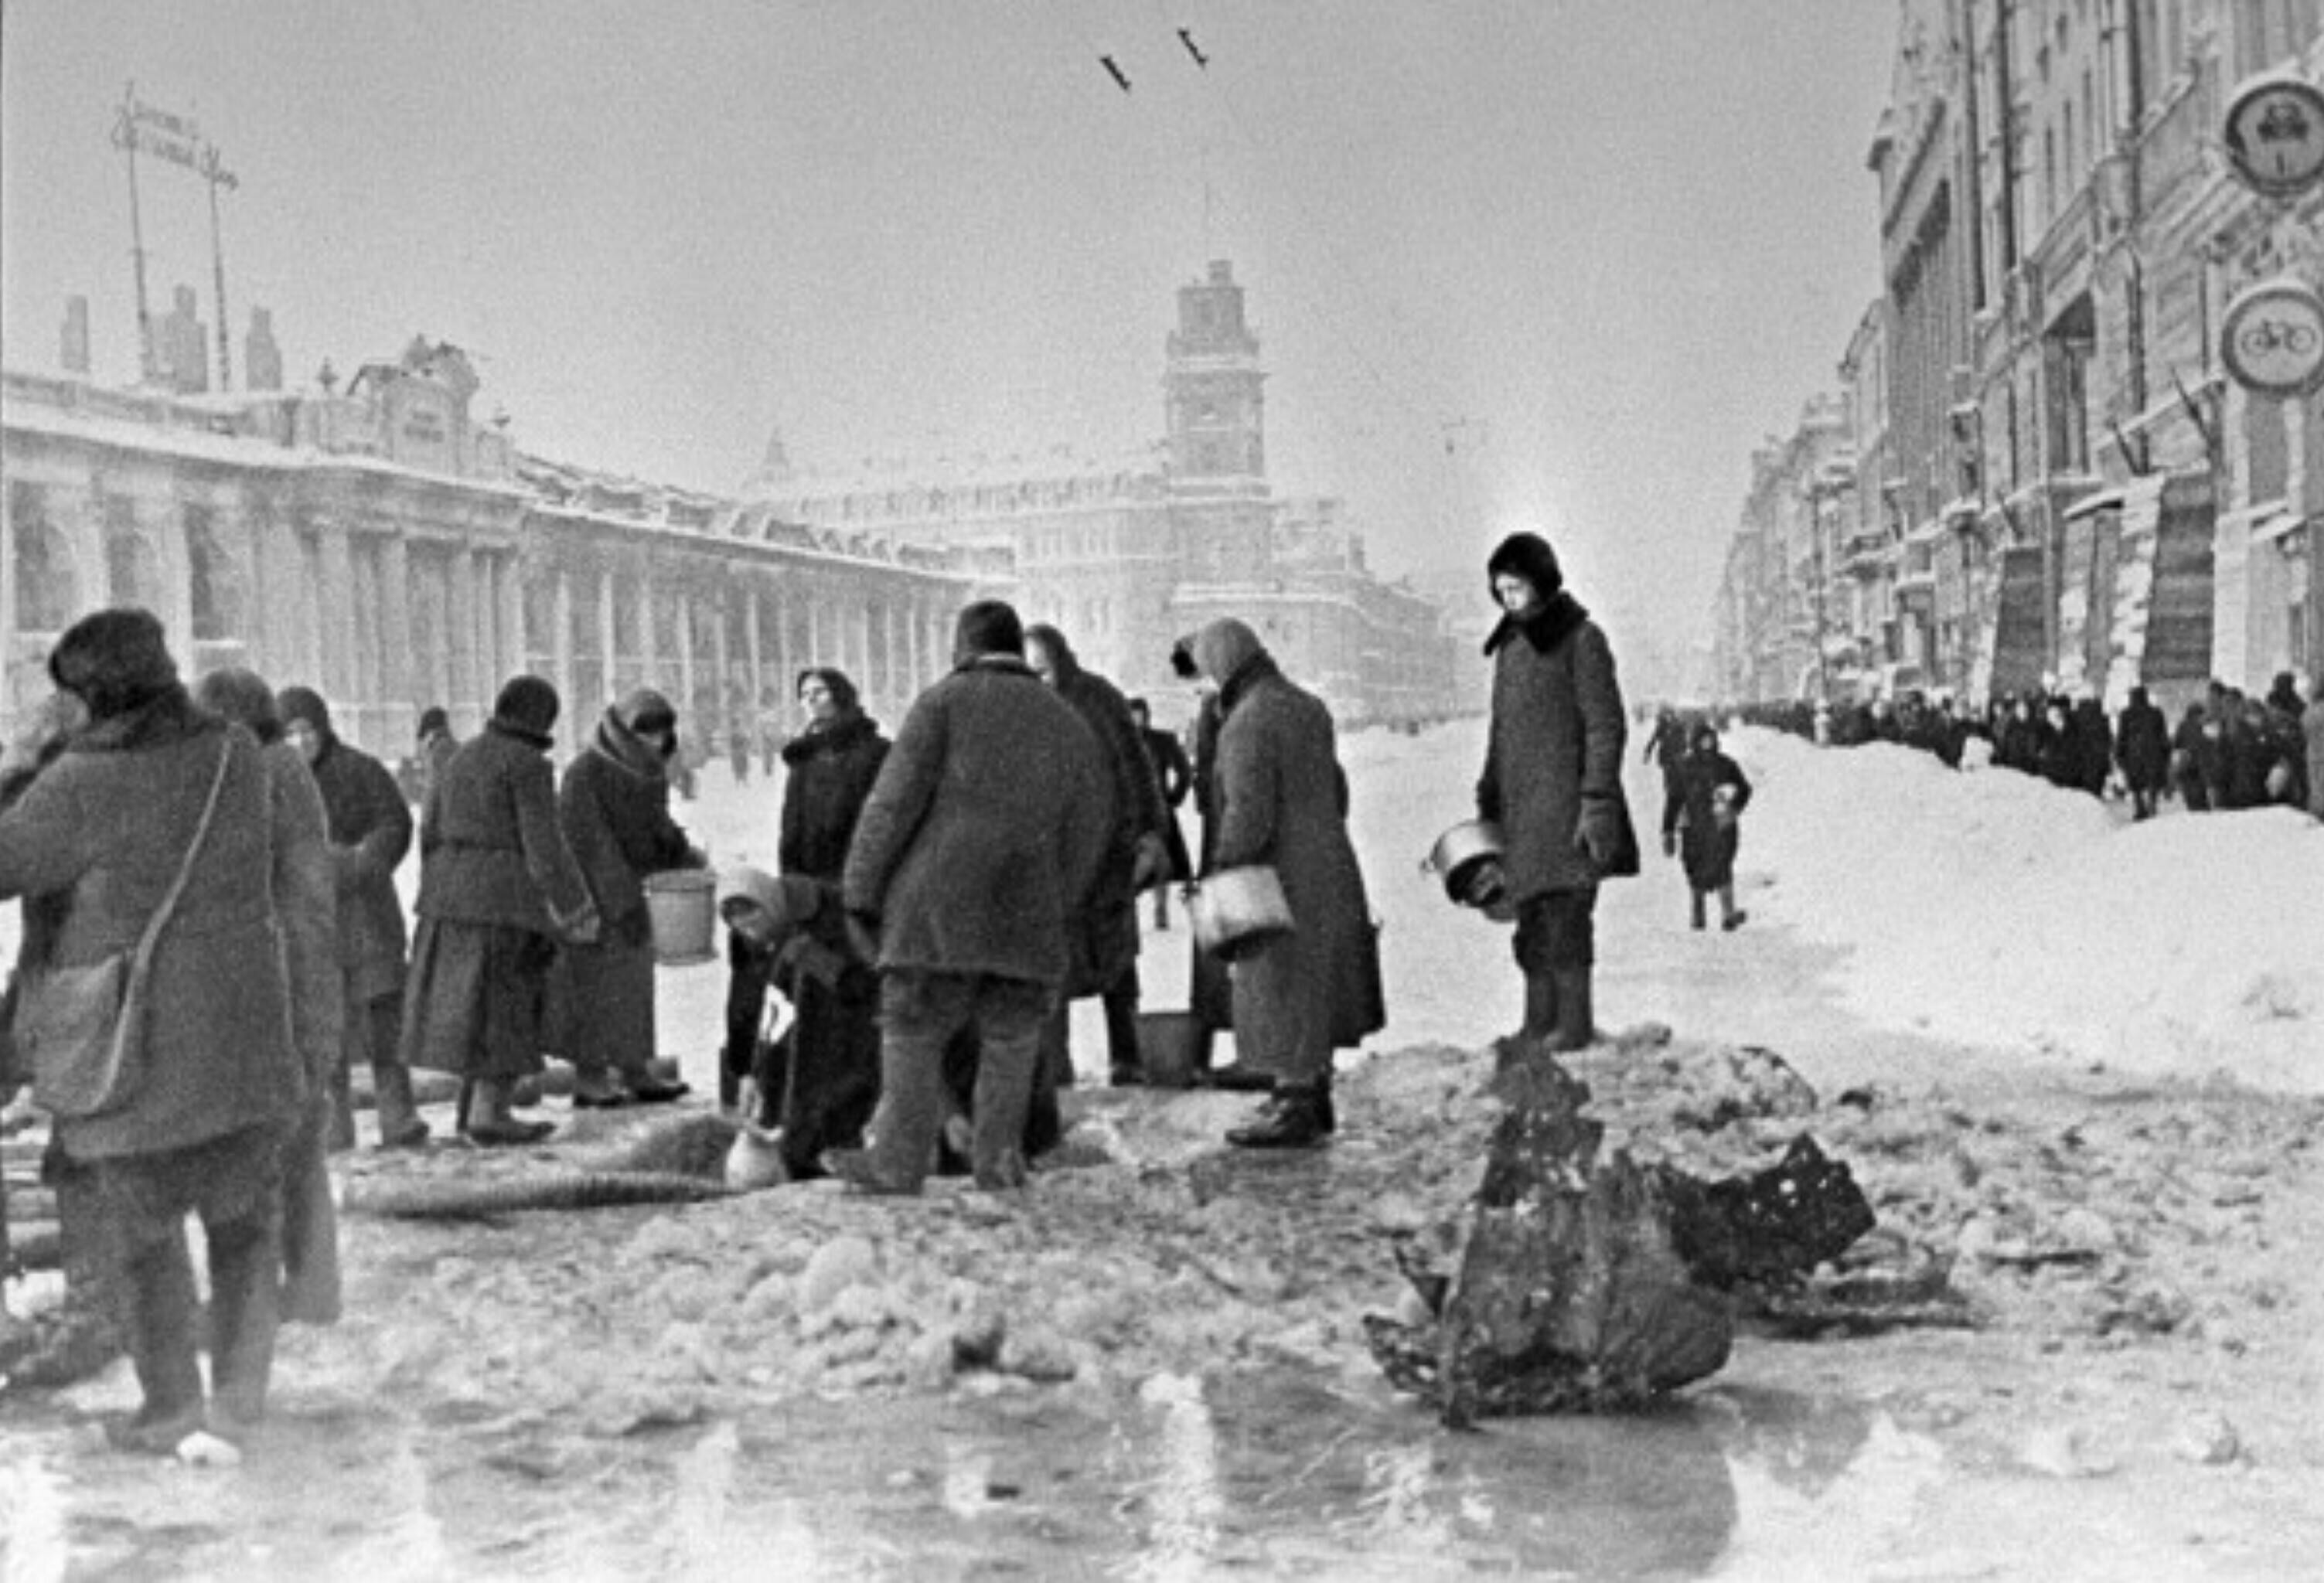  Жители блокадного Ленинграда набирают воду, появившуюся после артобстрела в пробоинах в асфальте на Невском проспекте (RIA Novosti archive, image #907 / Boris Kudoyarov / CC-BY-SA 3.0)